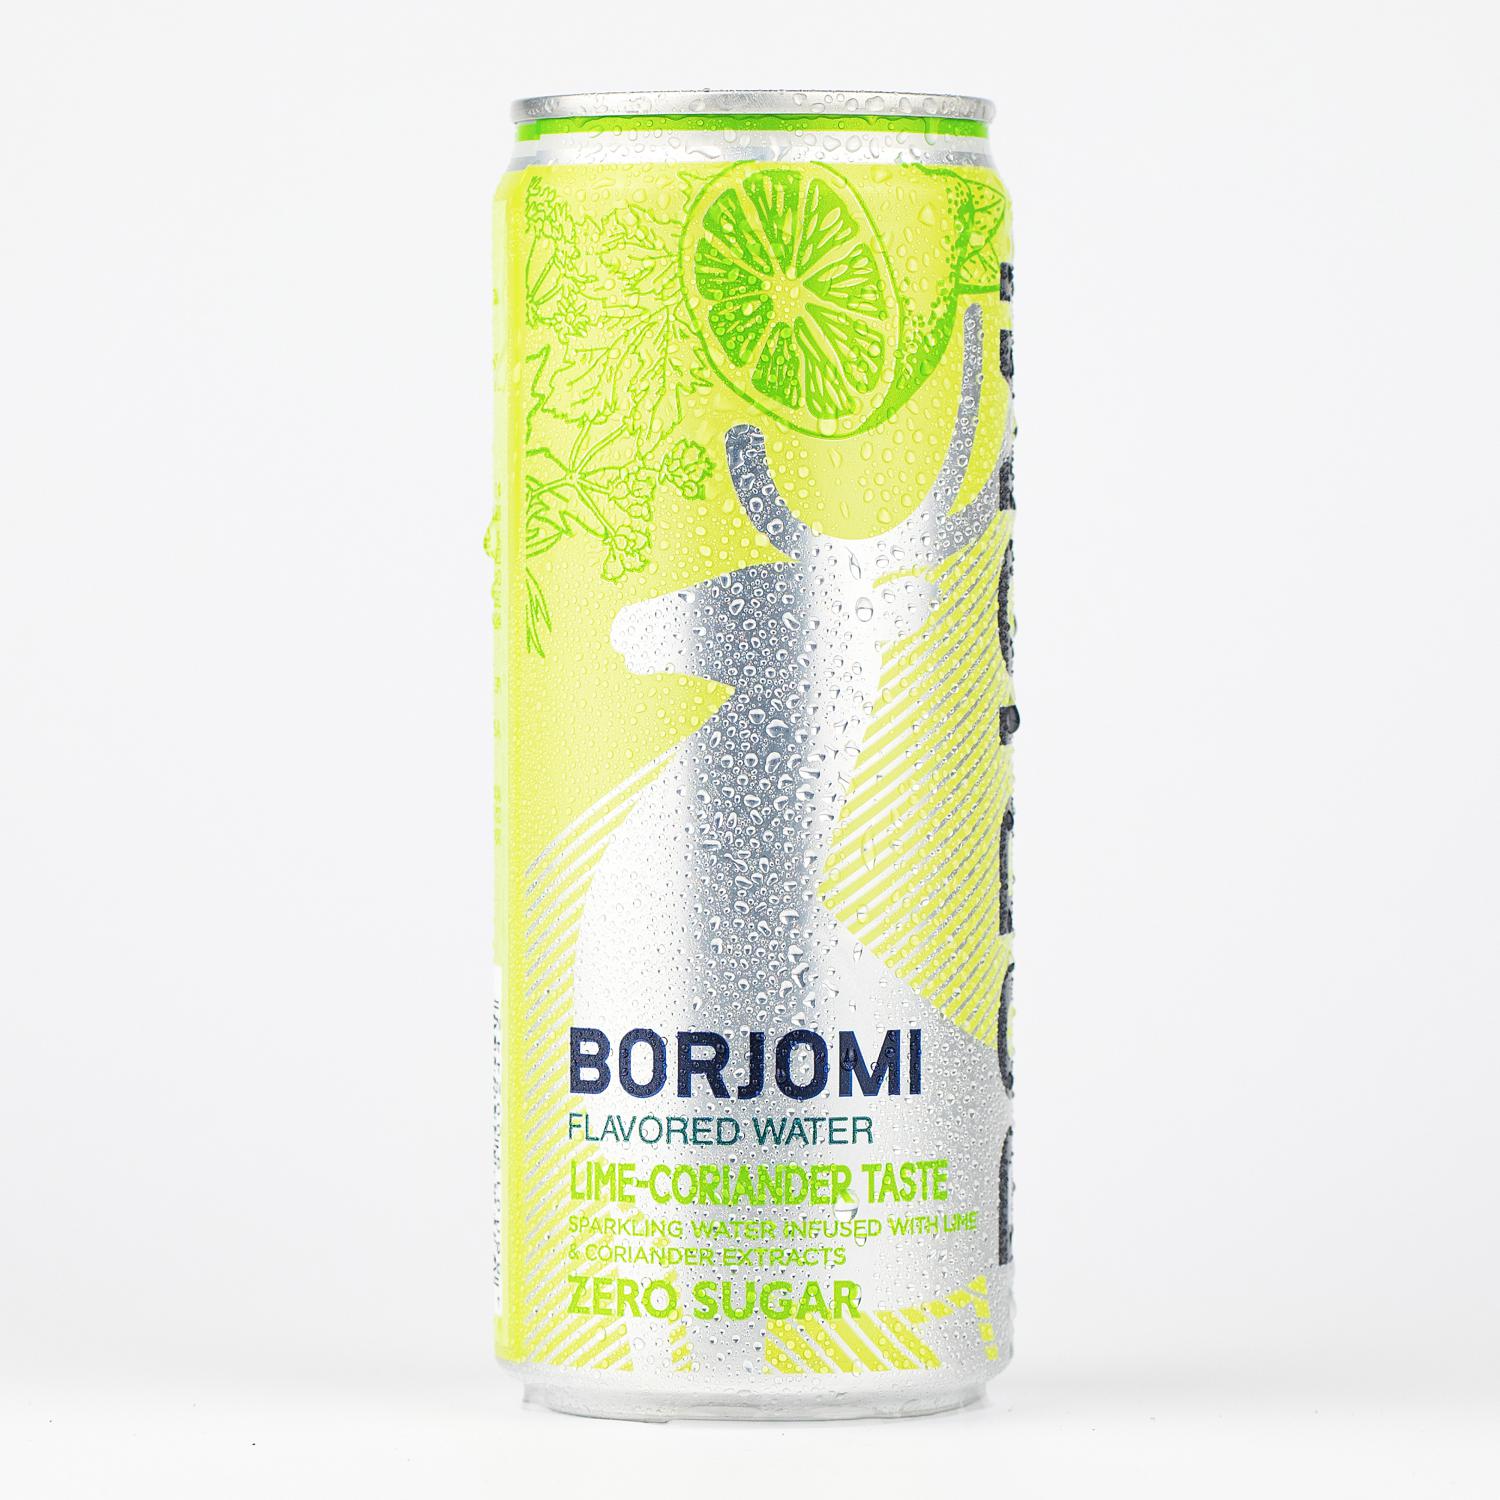 Borjomi with Lime-Coriander